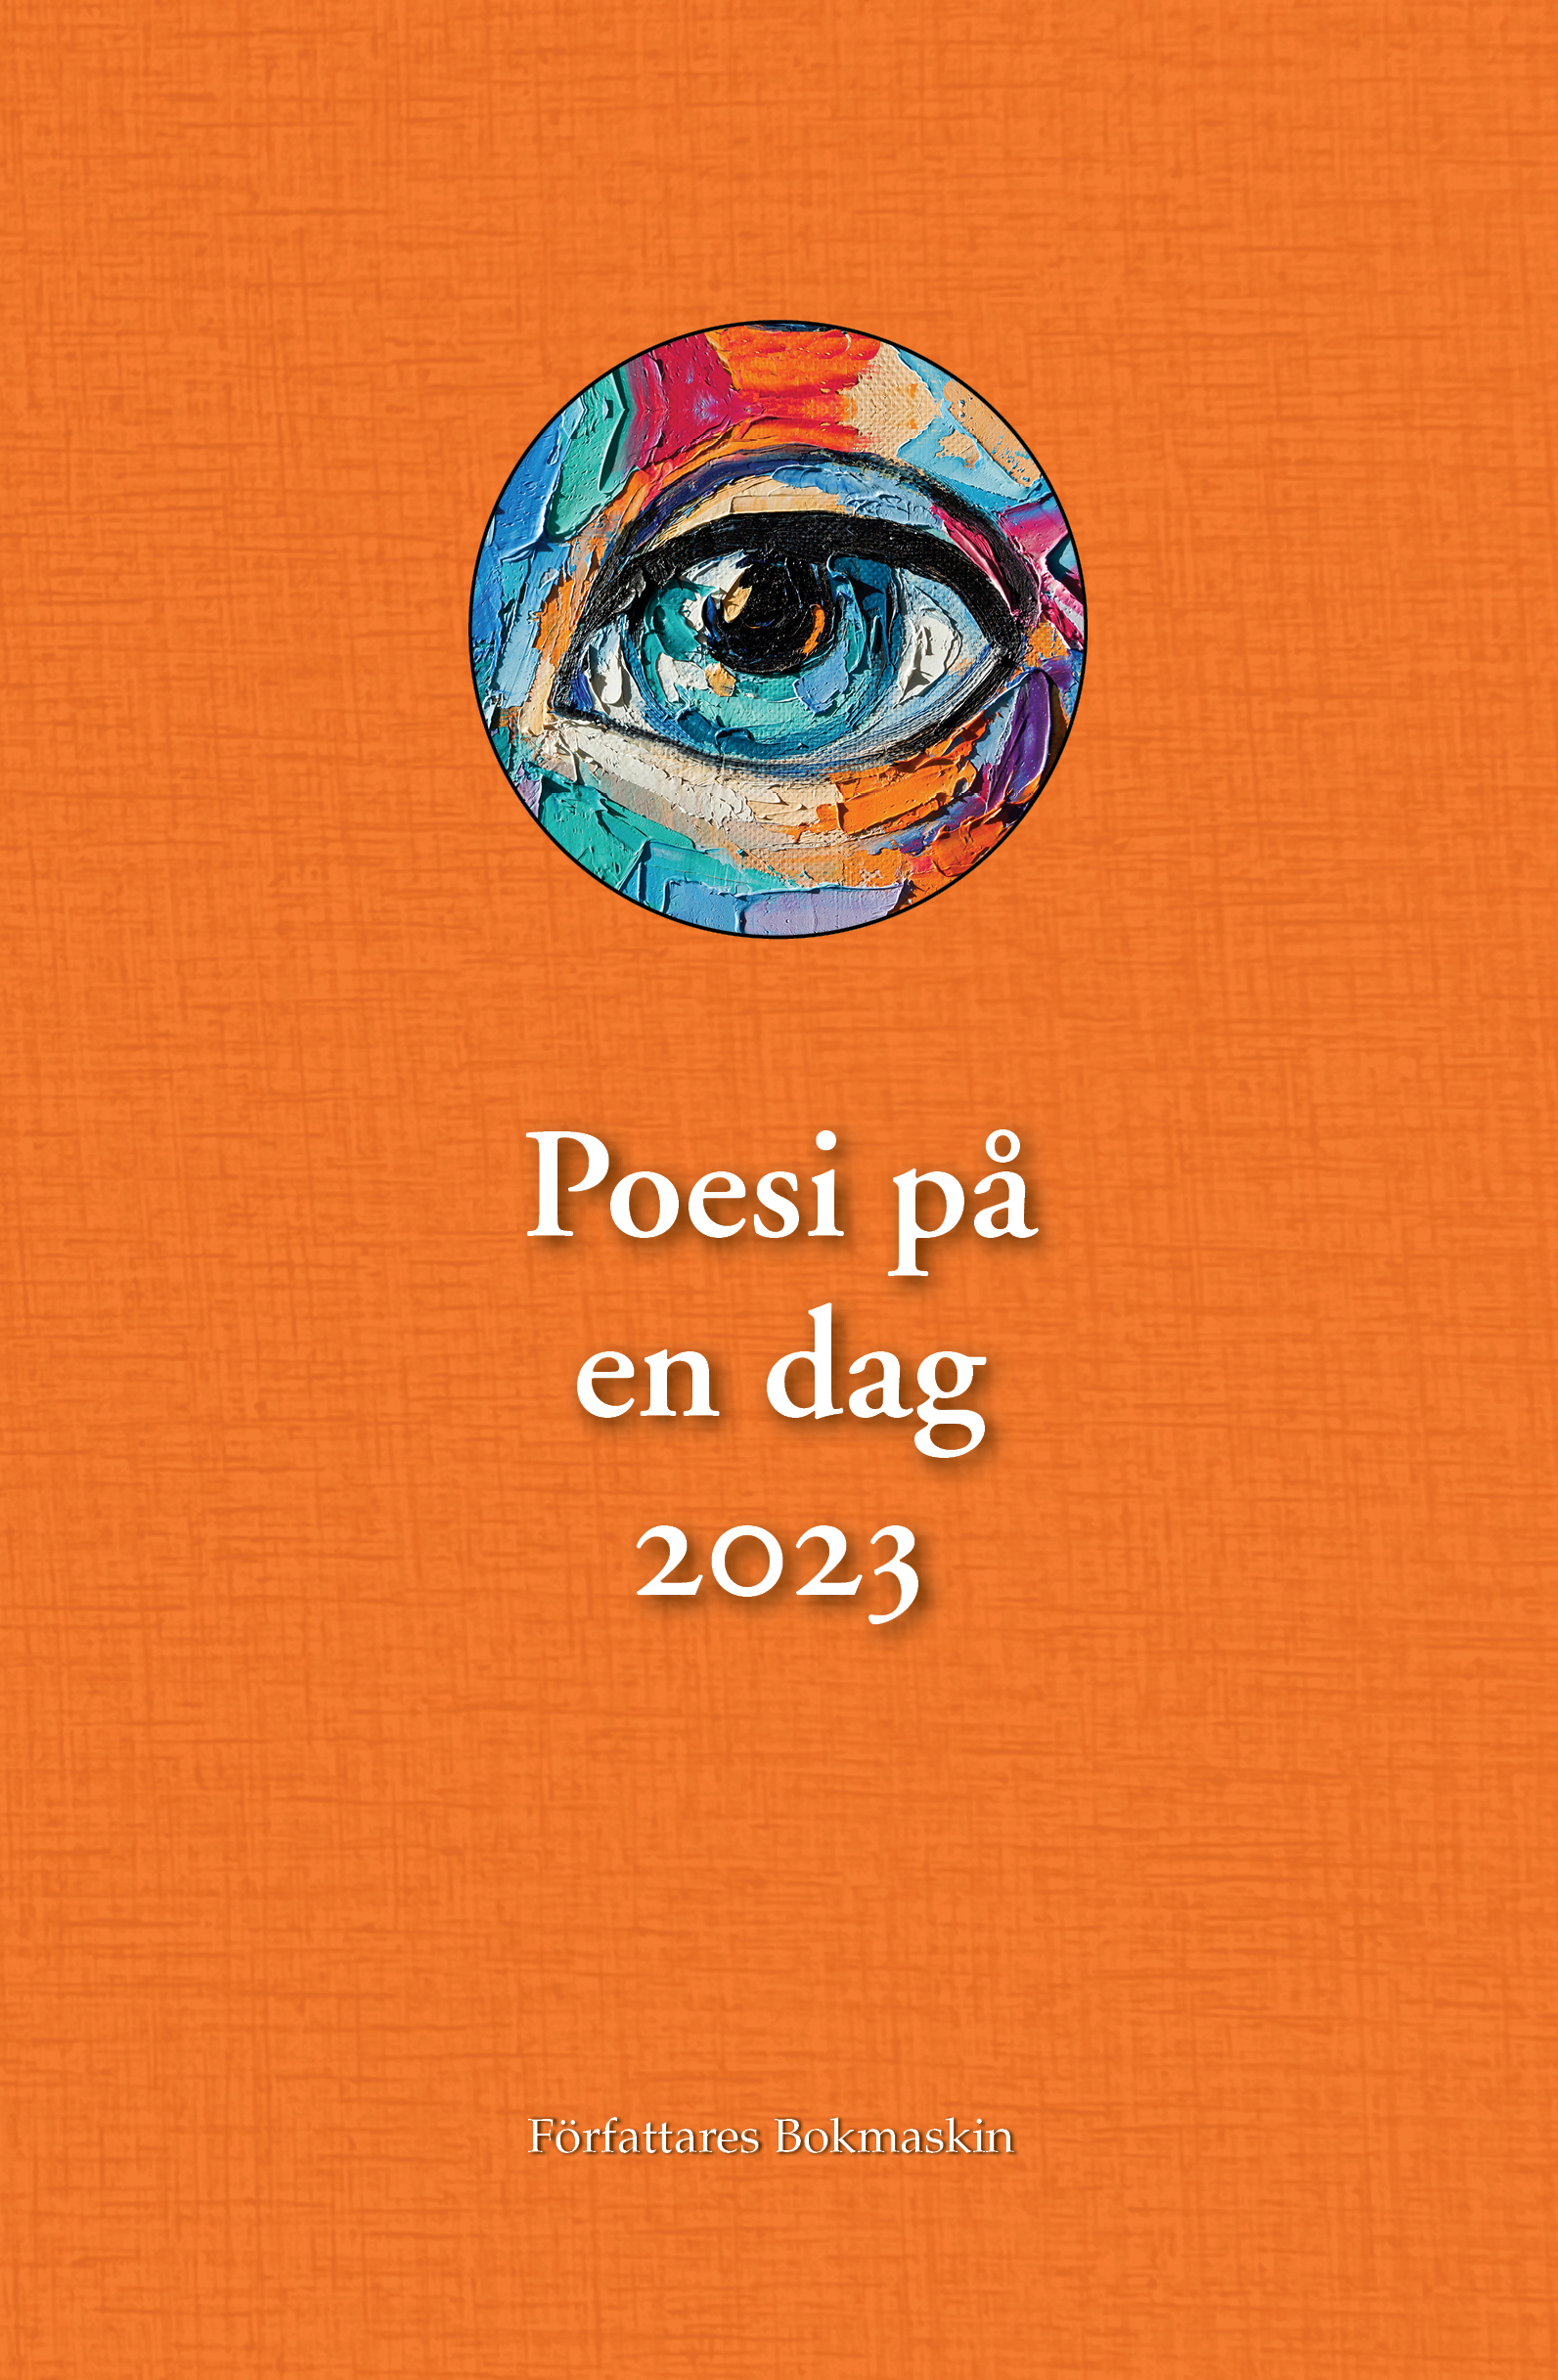 poesi-pa-en-dag-2023